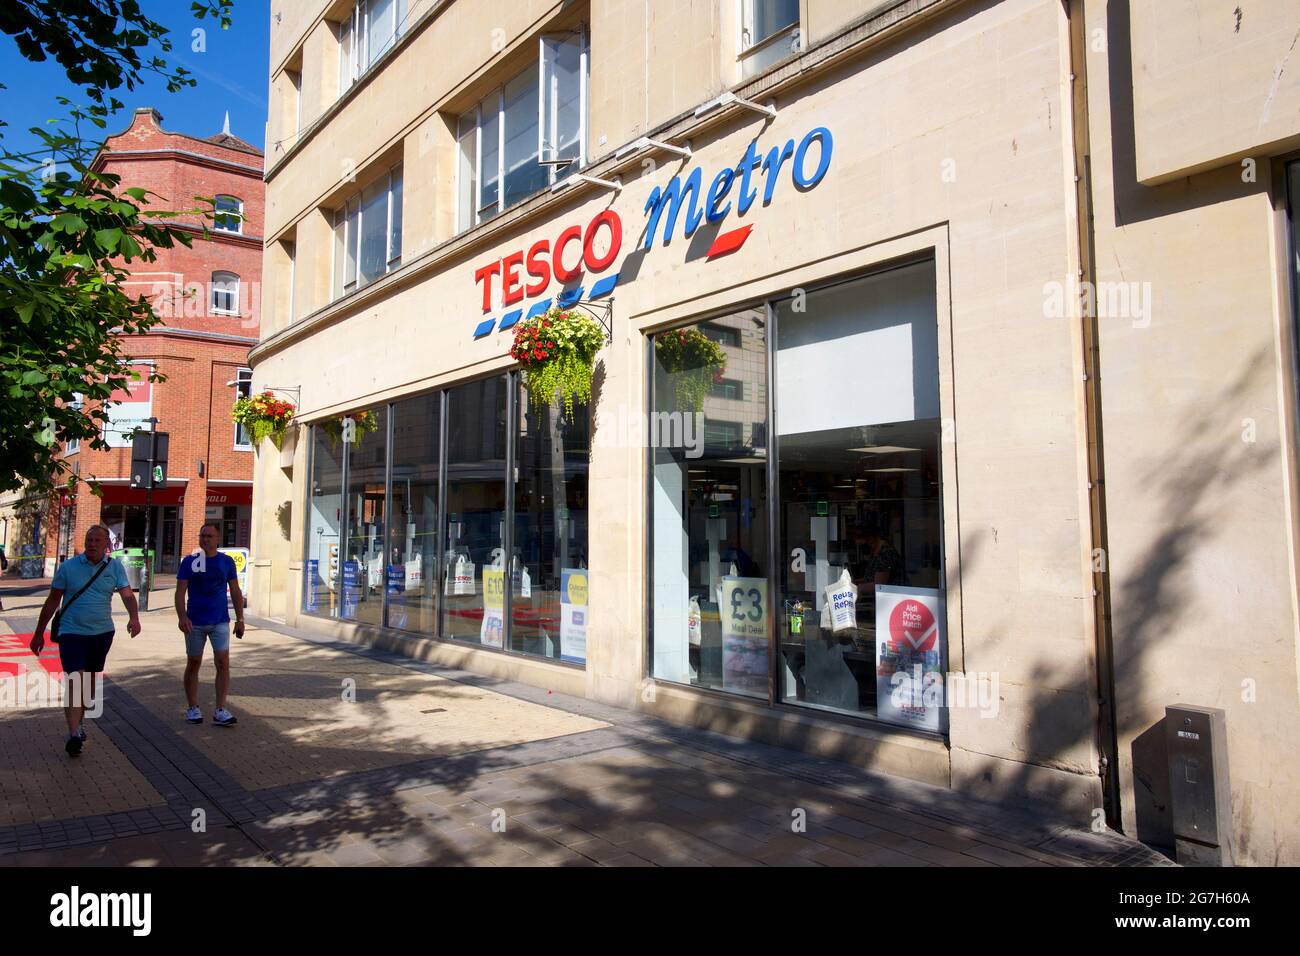 Tesco Metro store Stock Photo